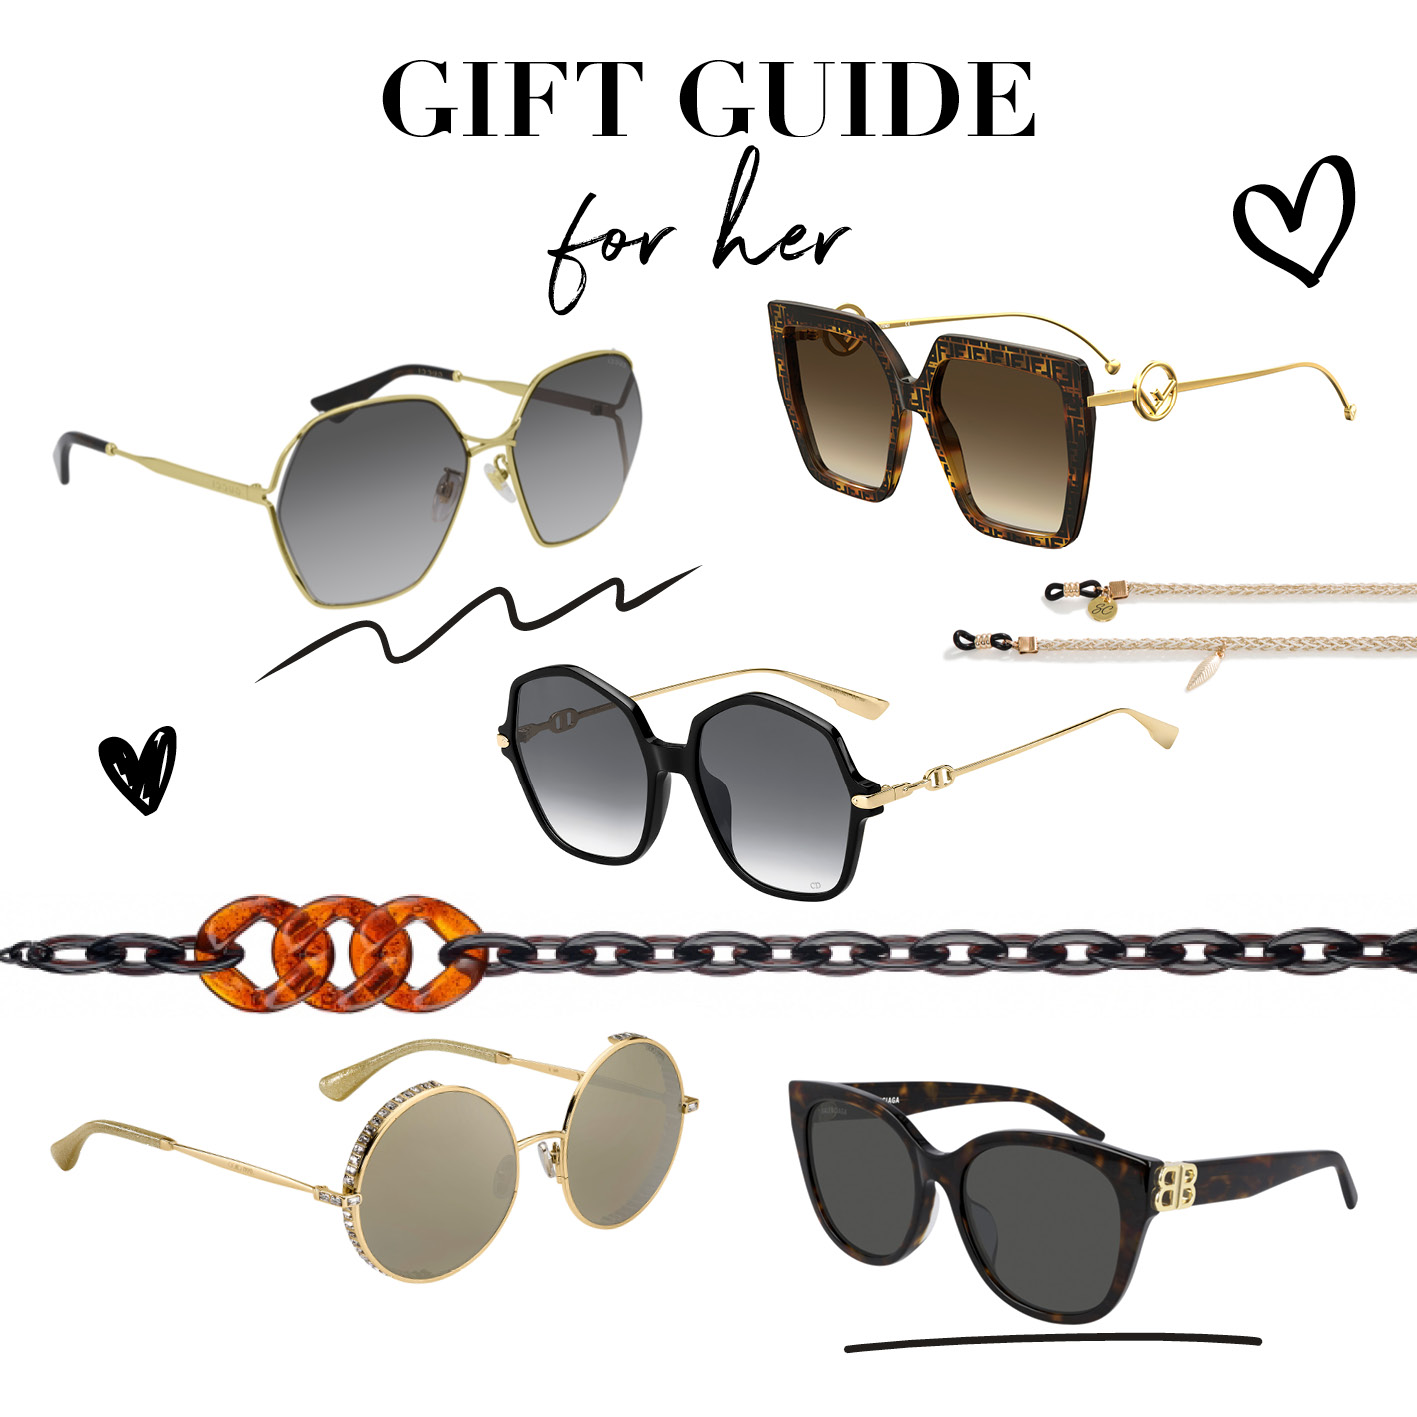 Black Friday gift guide: 5 zonnebrillen voor haar - Optiek Lammerant